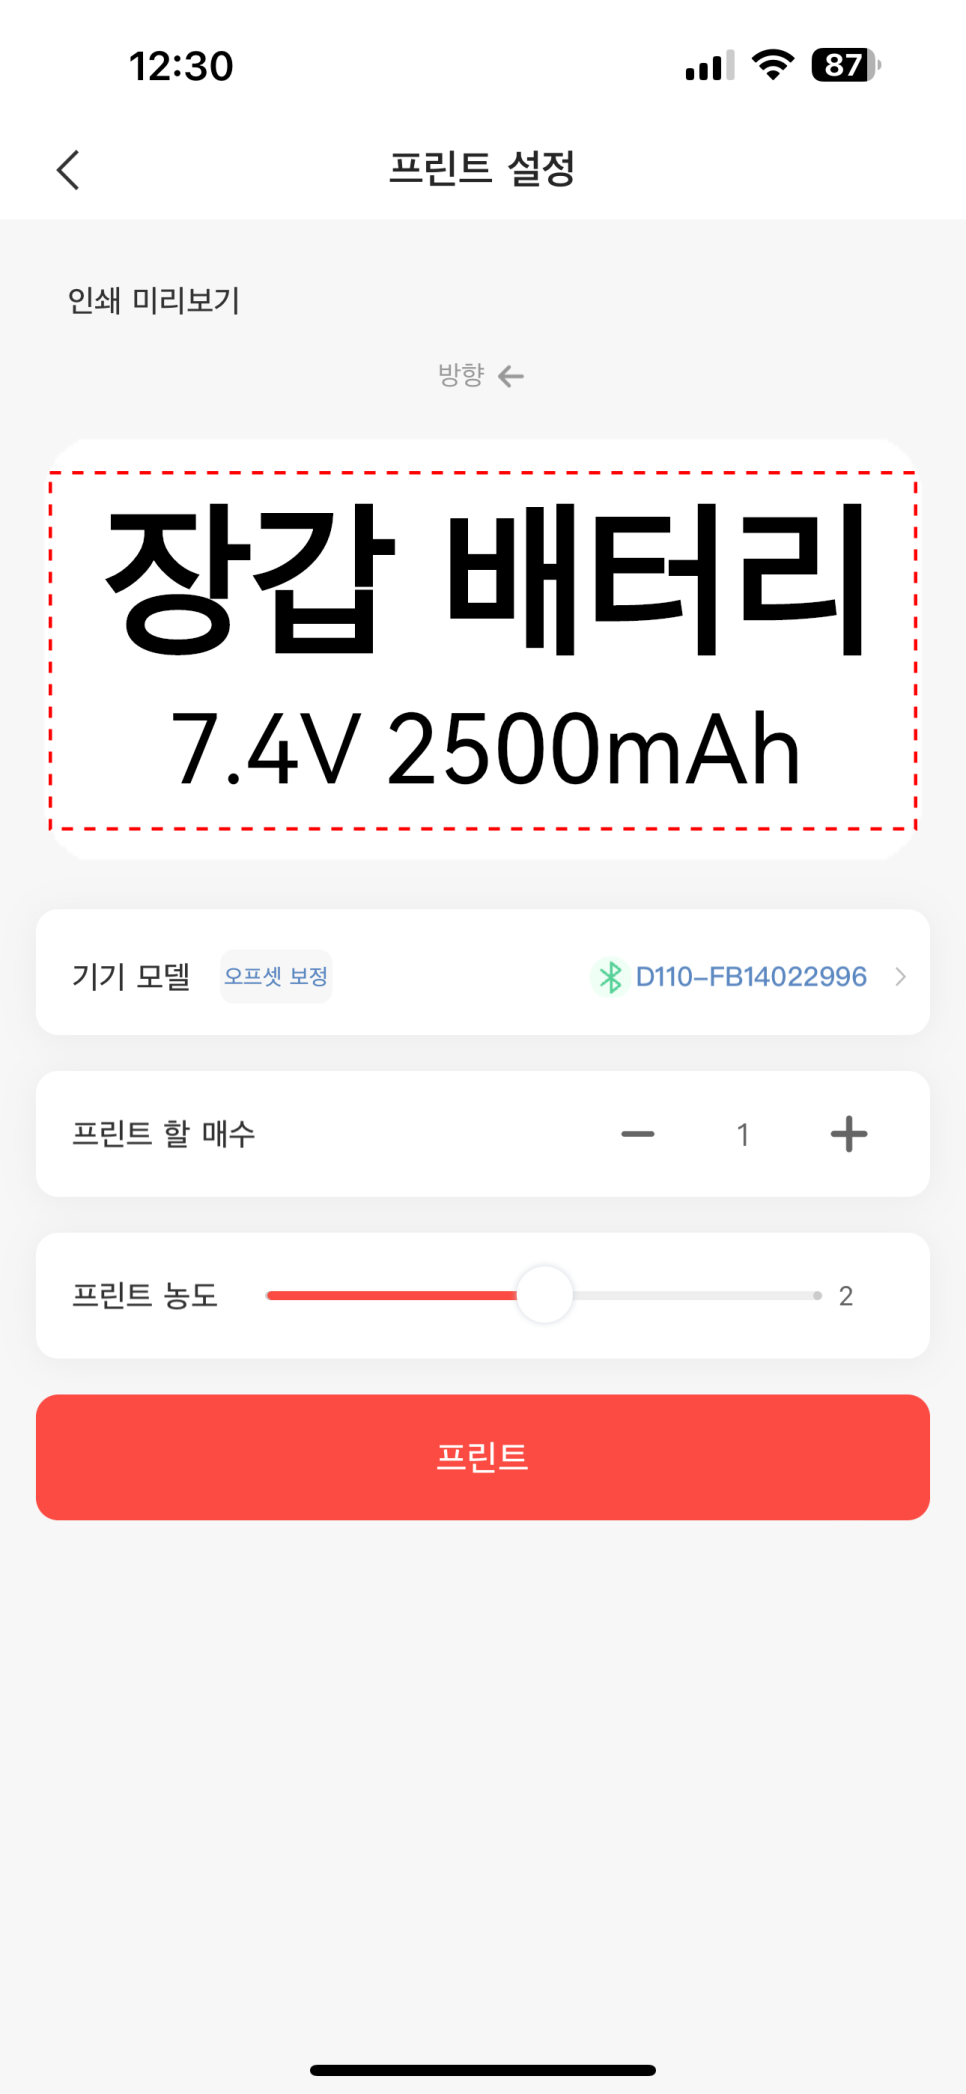 라벨프린터 님봇 D110  12,000원 직구후기 + 어플로 작동 feat. 알리익스프레스 14주년 세일 ~!